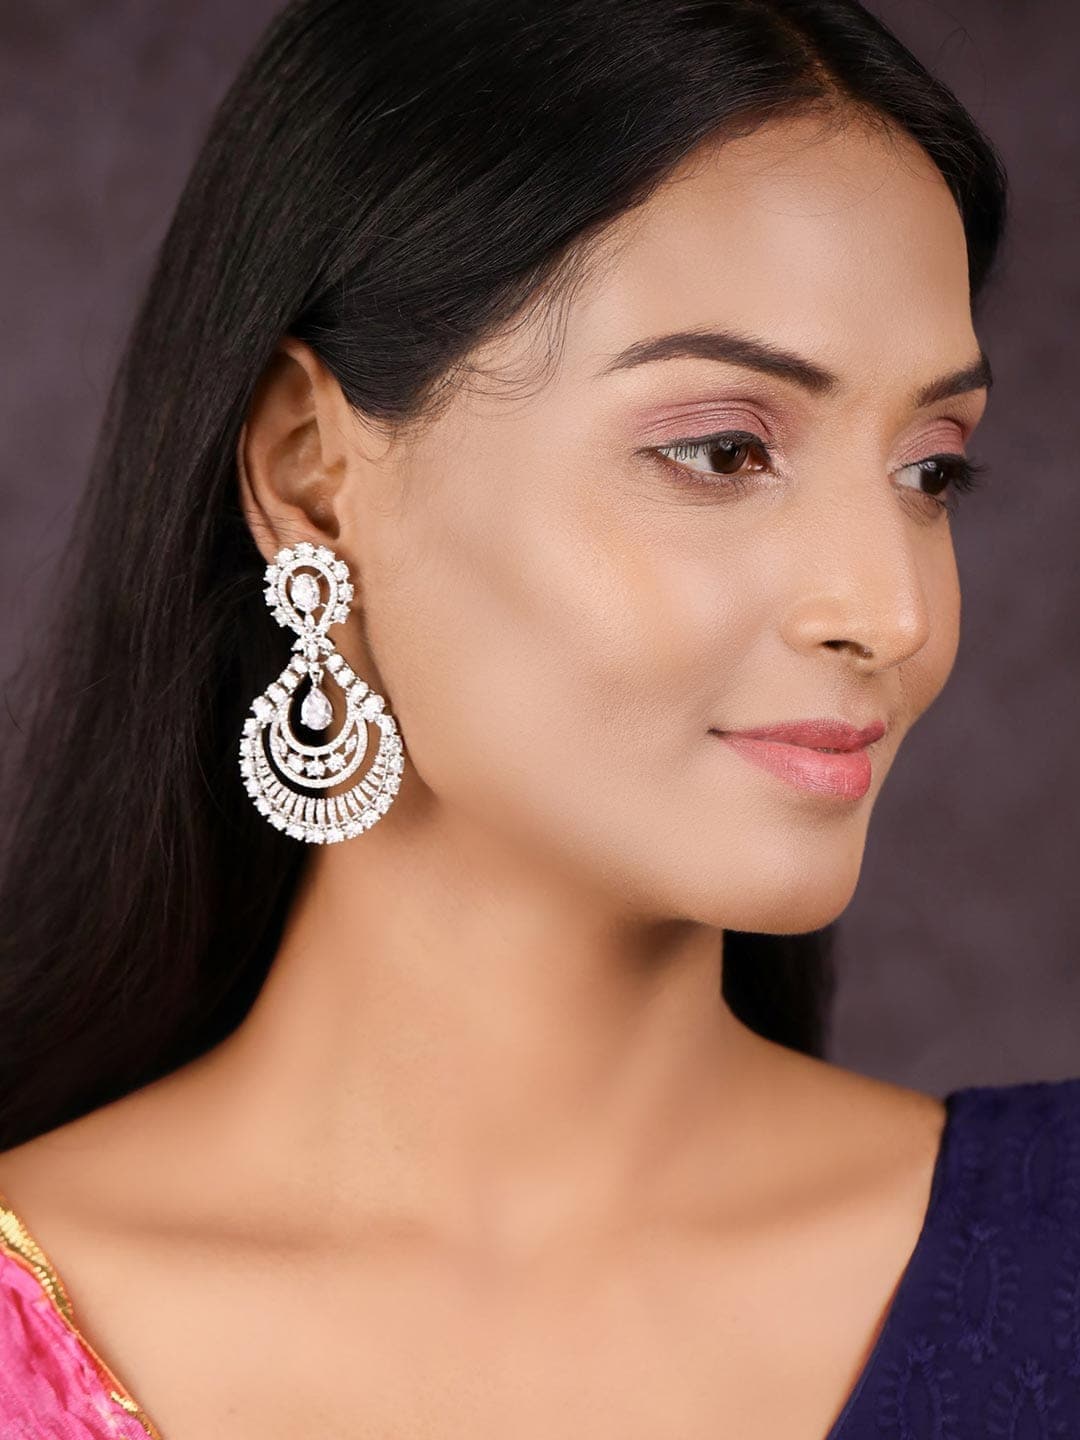 Buy Pink Acetate Earrings for Women Grey Statement Earrings Fancy Earrings  Online in India - Etsy